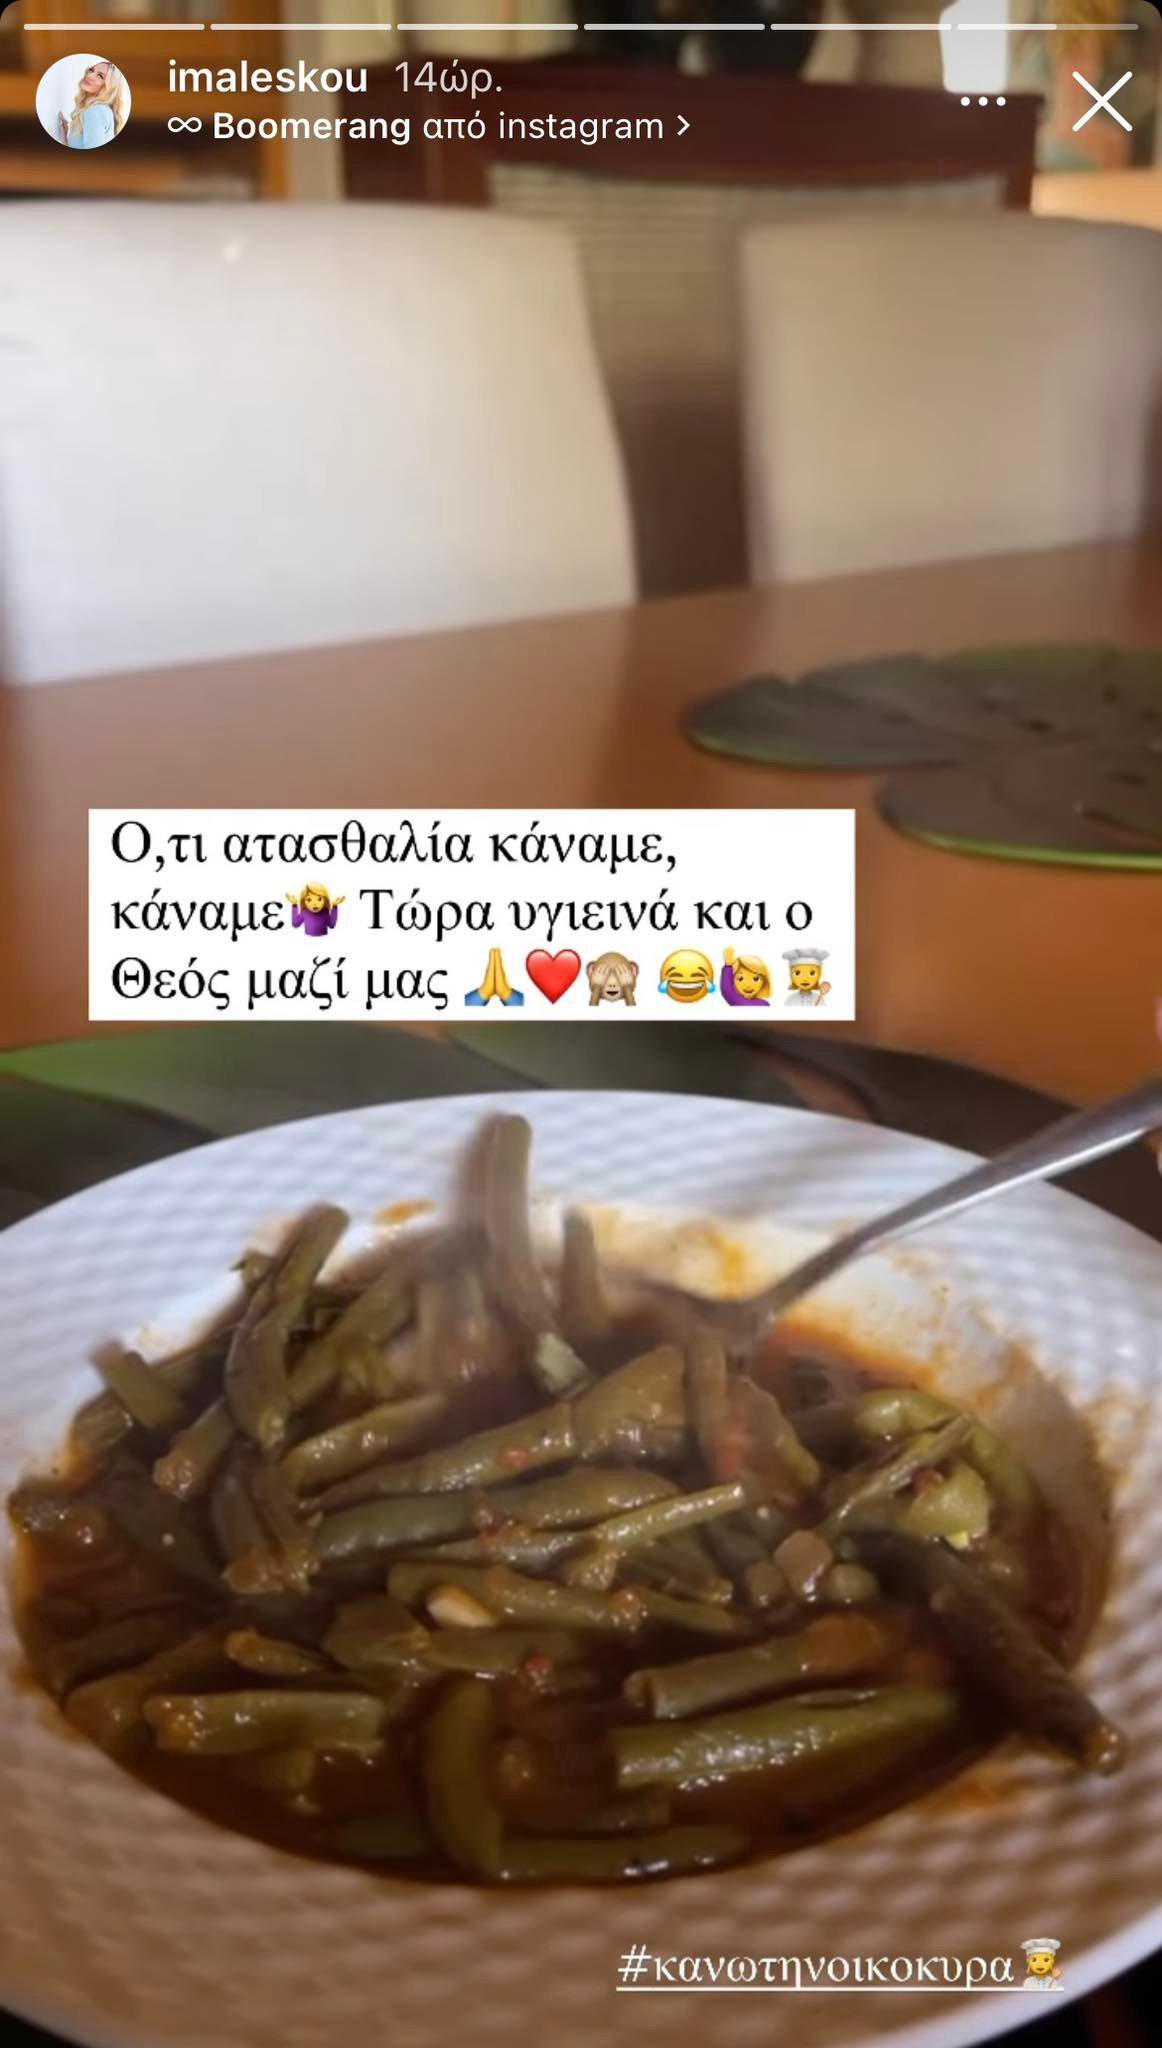 Ιωάννα Μαλέσκου: Το υγιεινό πιάτο που απόλαυσε η εγκυμονούσα μετά τις ατασθαλίες των Χριστουγέννων